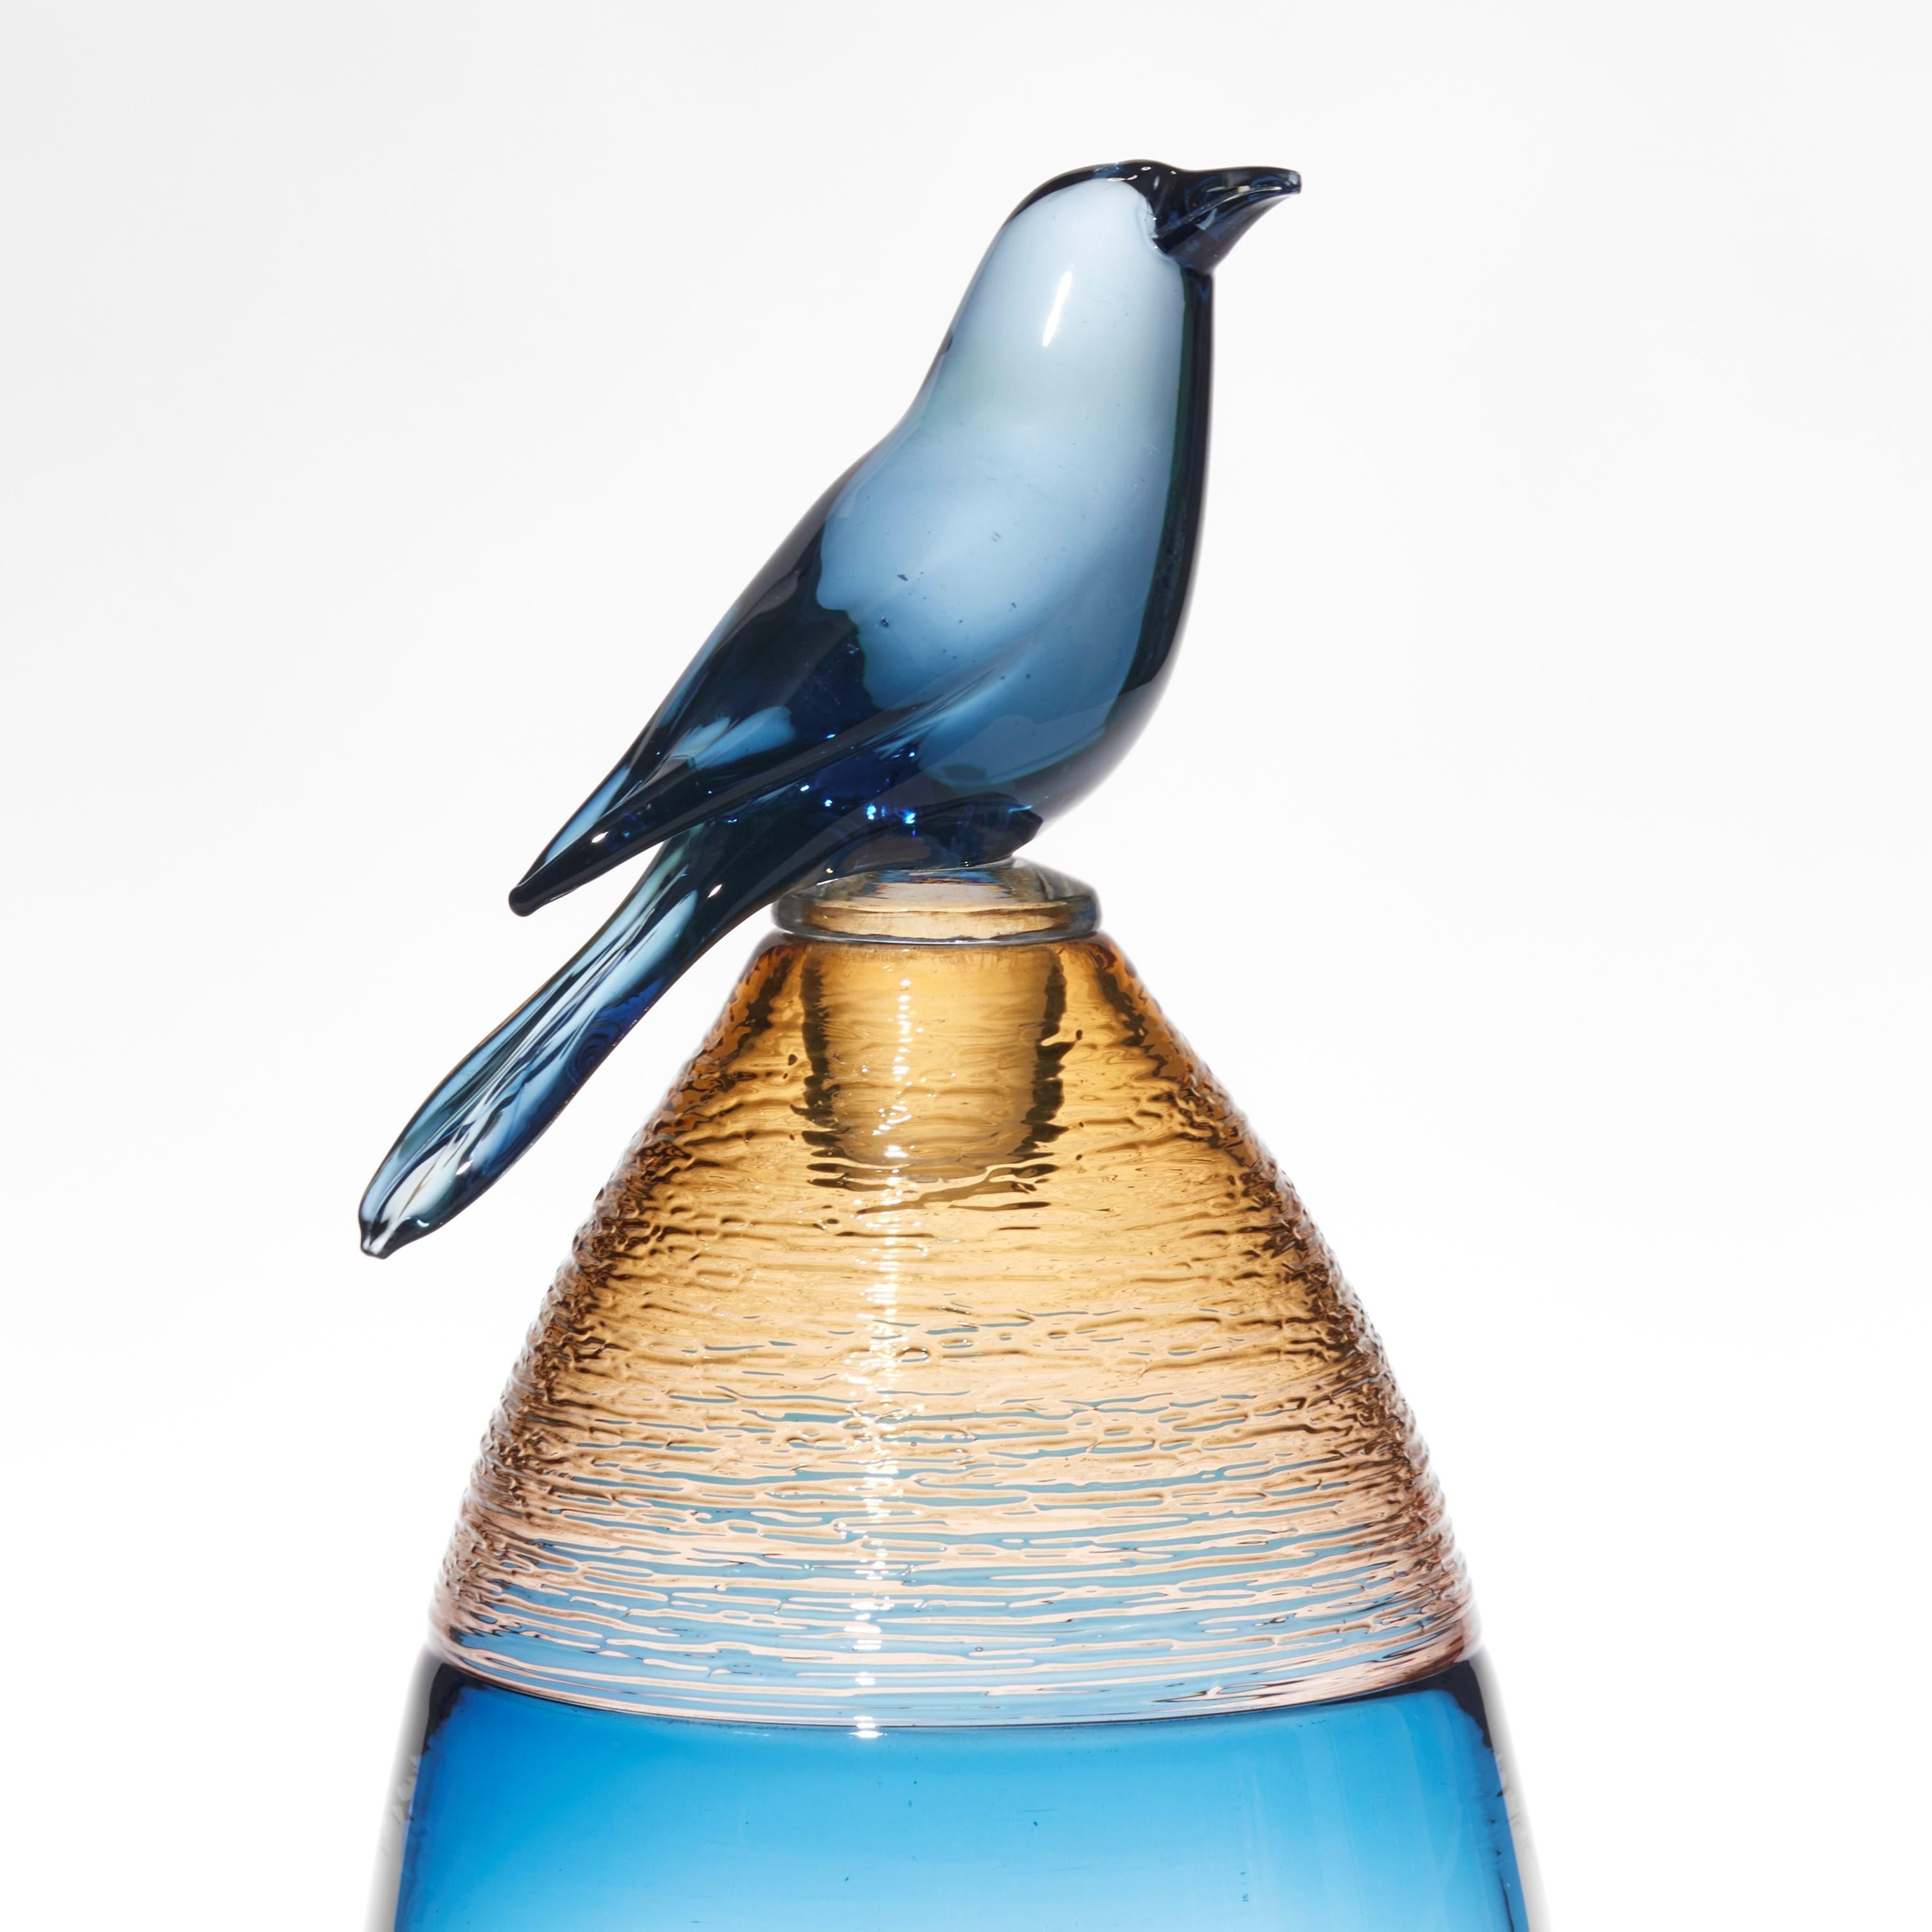 Organic Modern All About Birds XIX, blue & amber glass bird themed sculpture by Julie Johnson